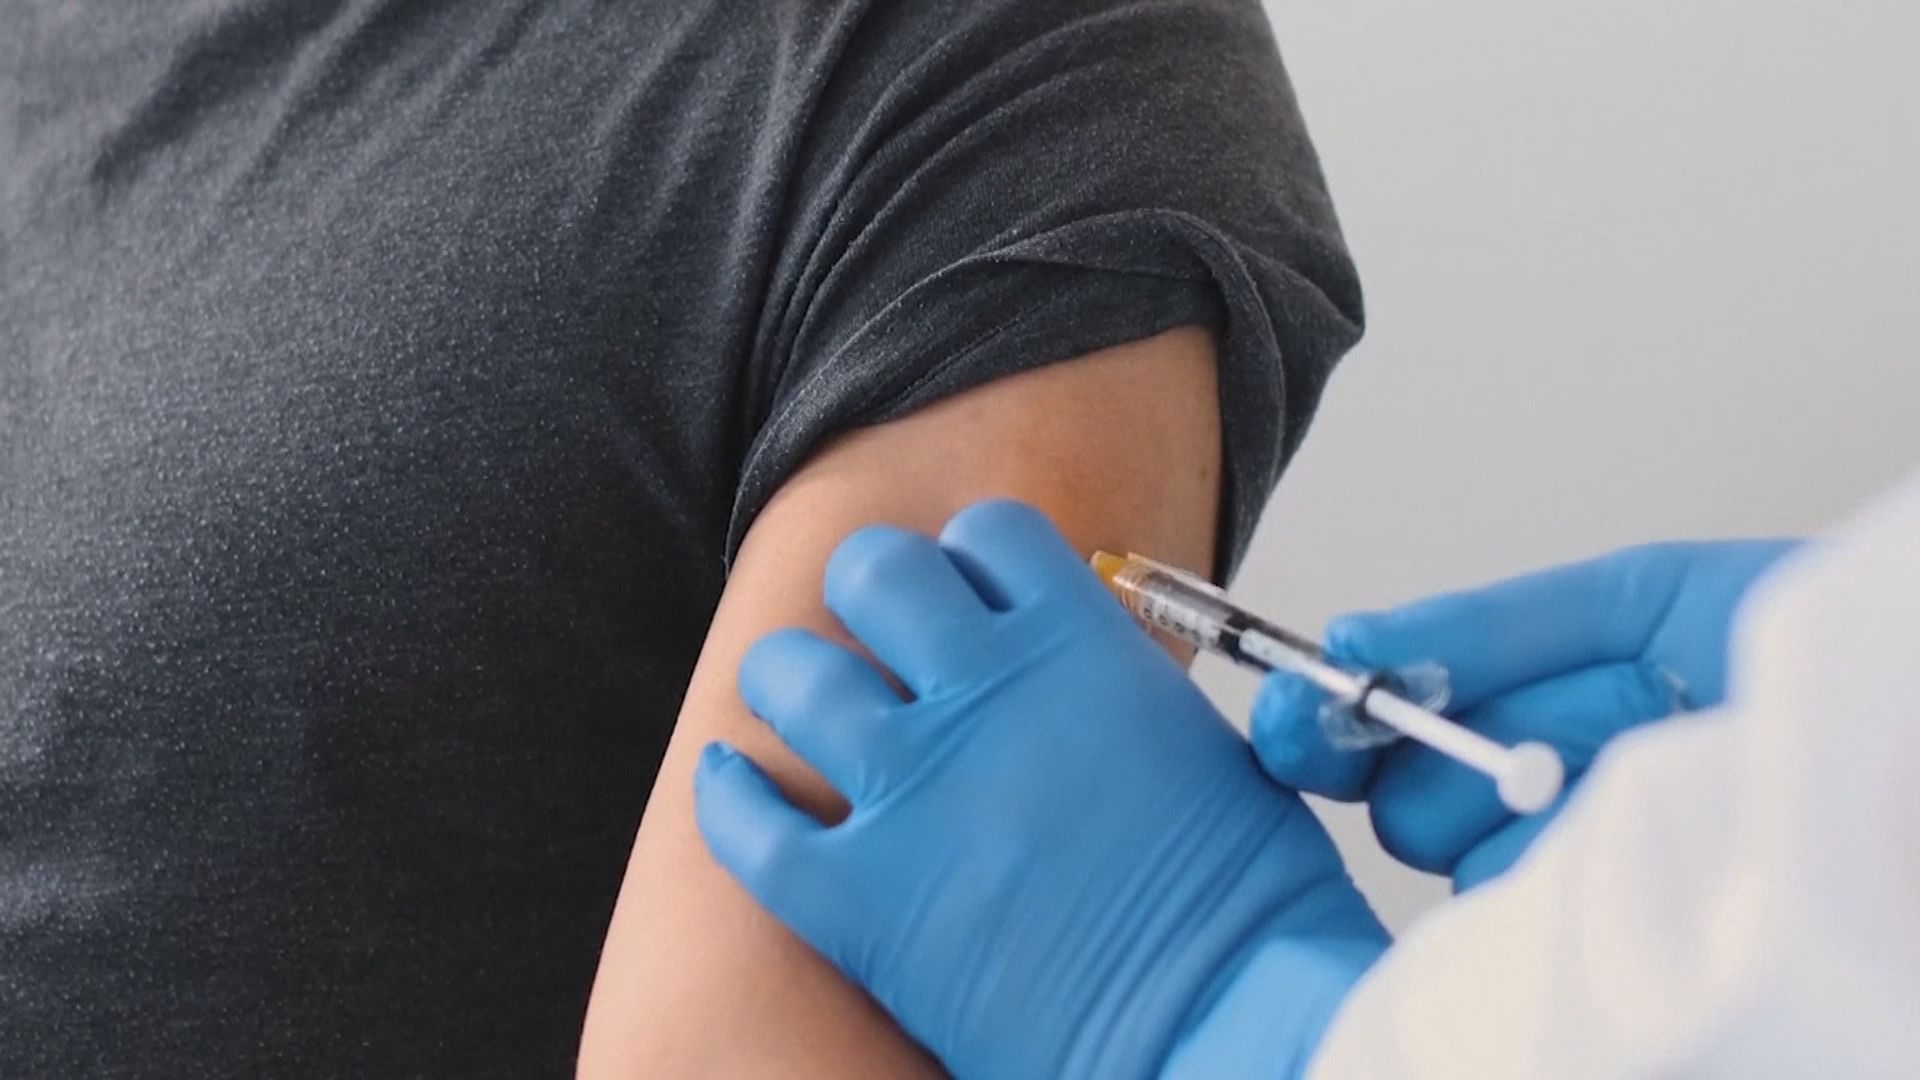 輝瑞與BioNTech已向歐洲藥管局提新冠疫苗應用許可